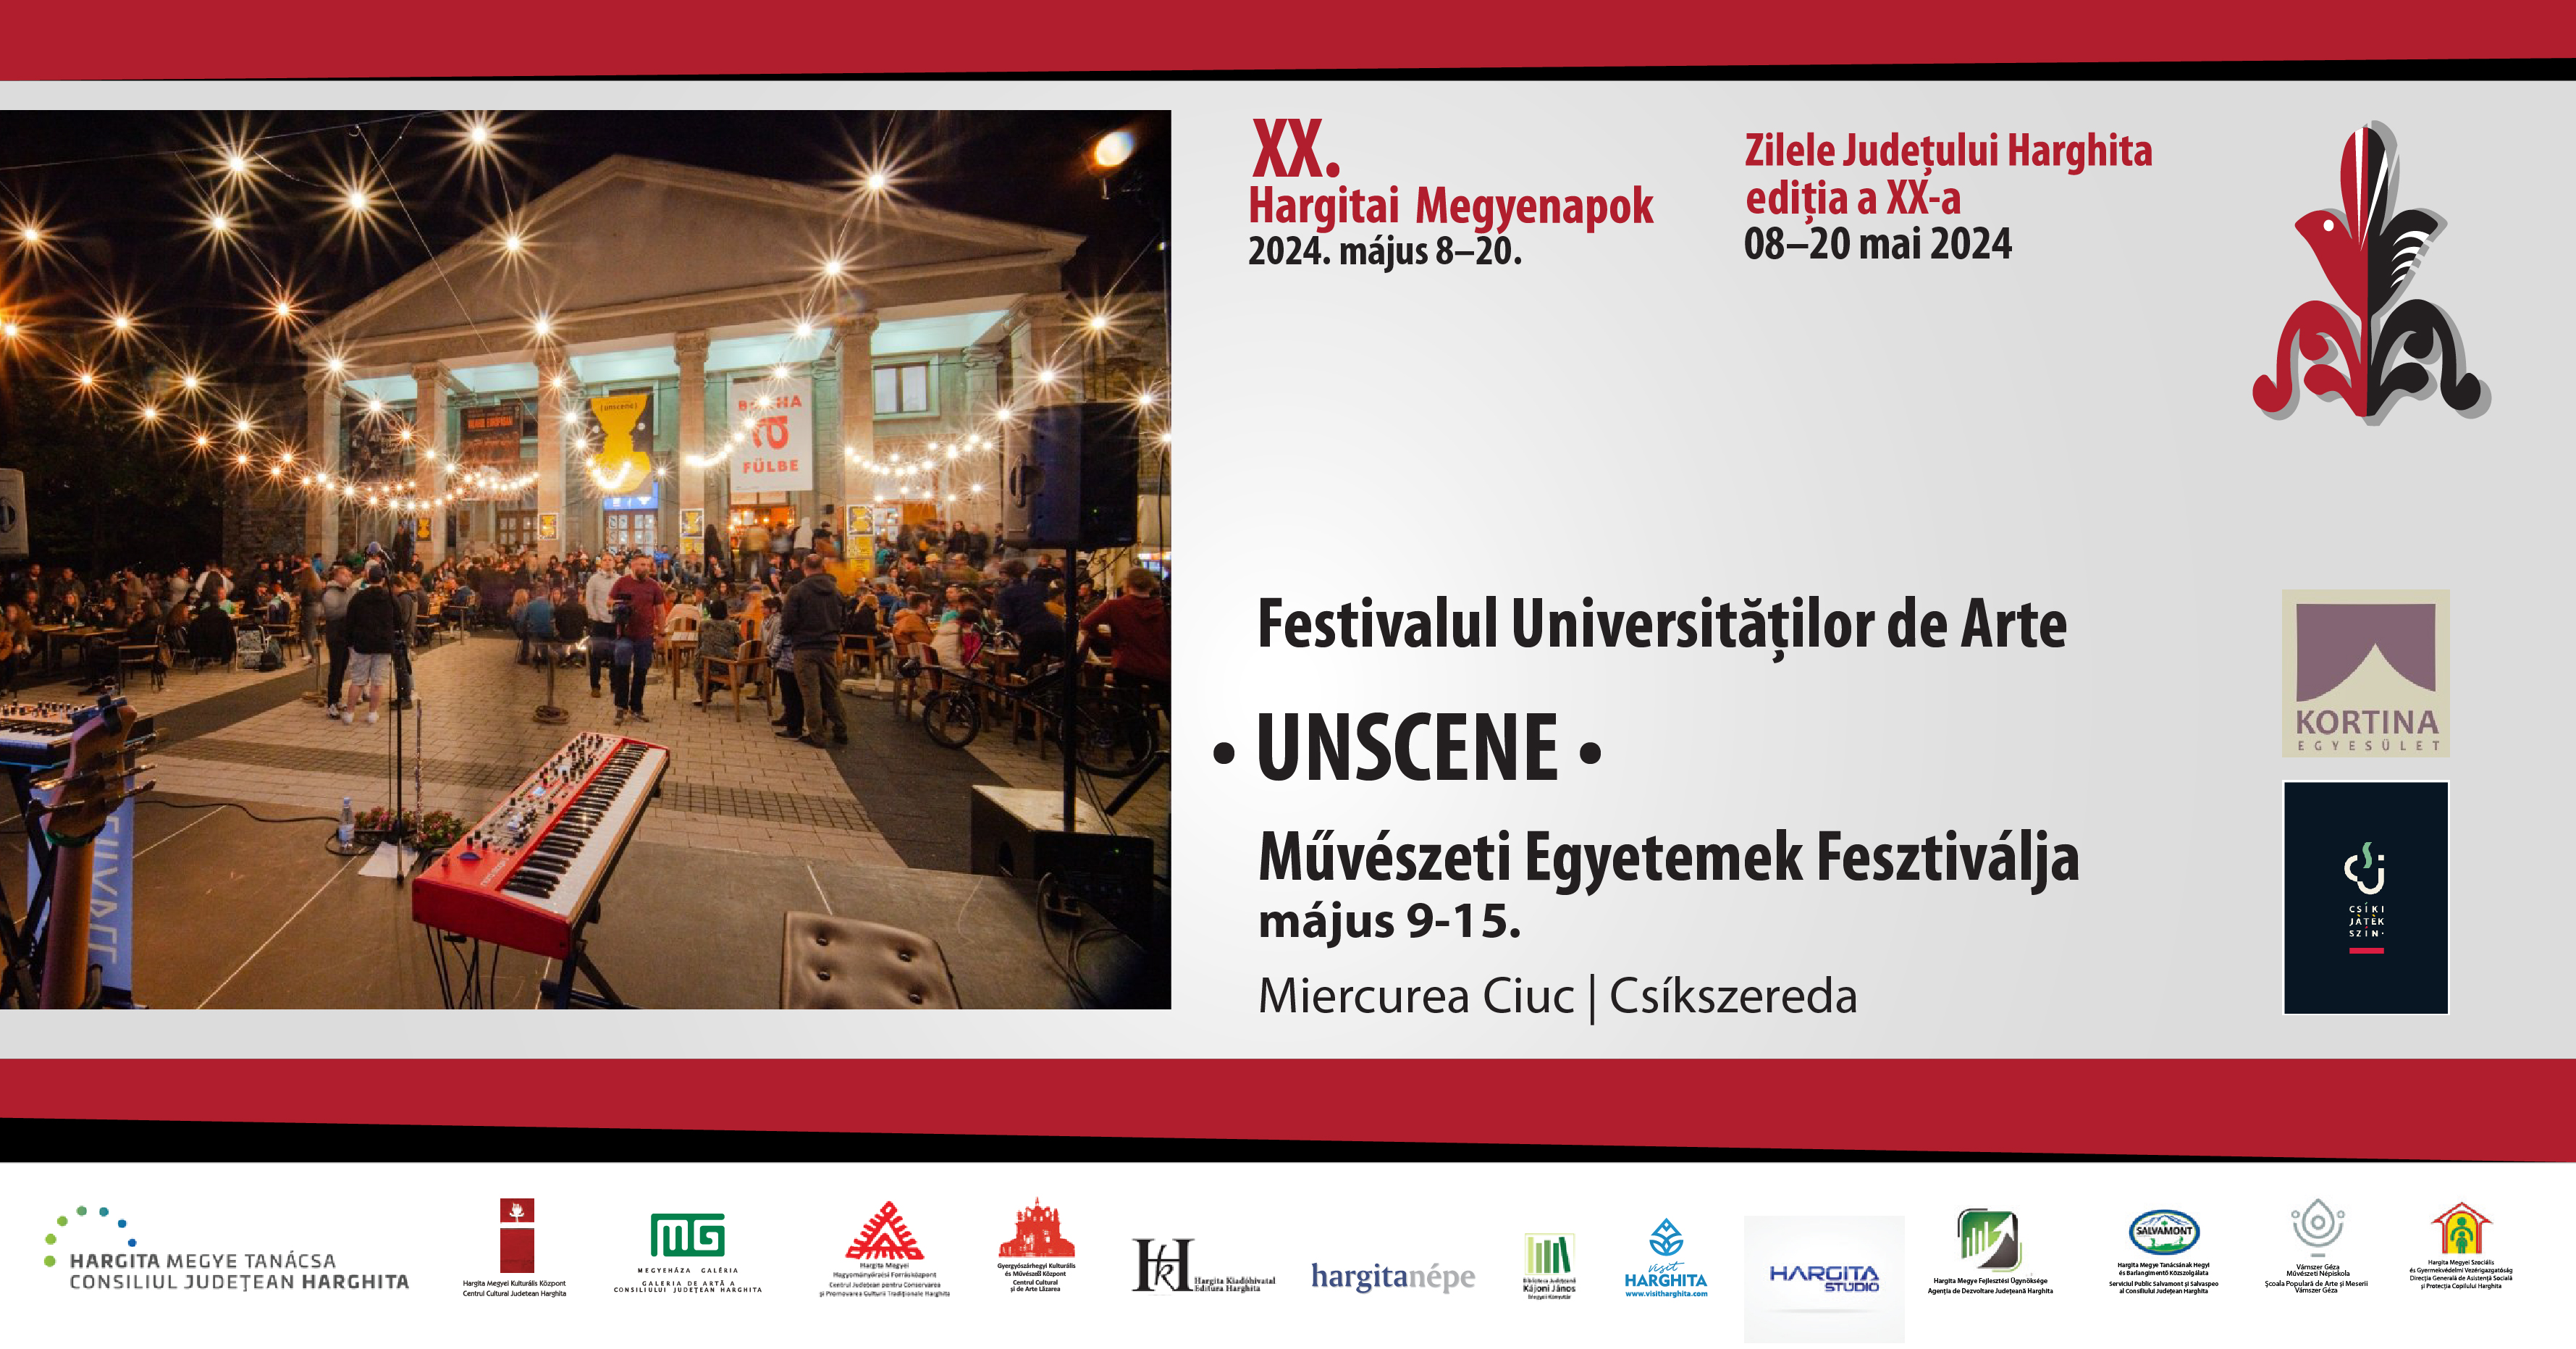 UNSCENE - Művészeti Egyetemek Fesztiválja